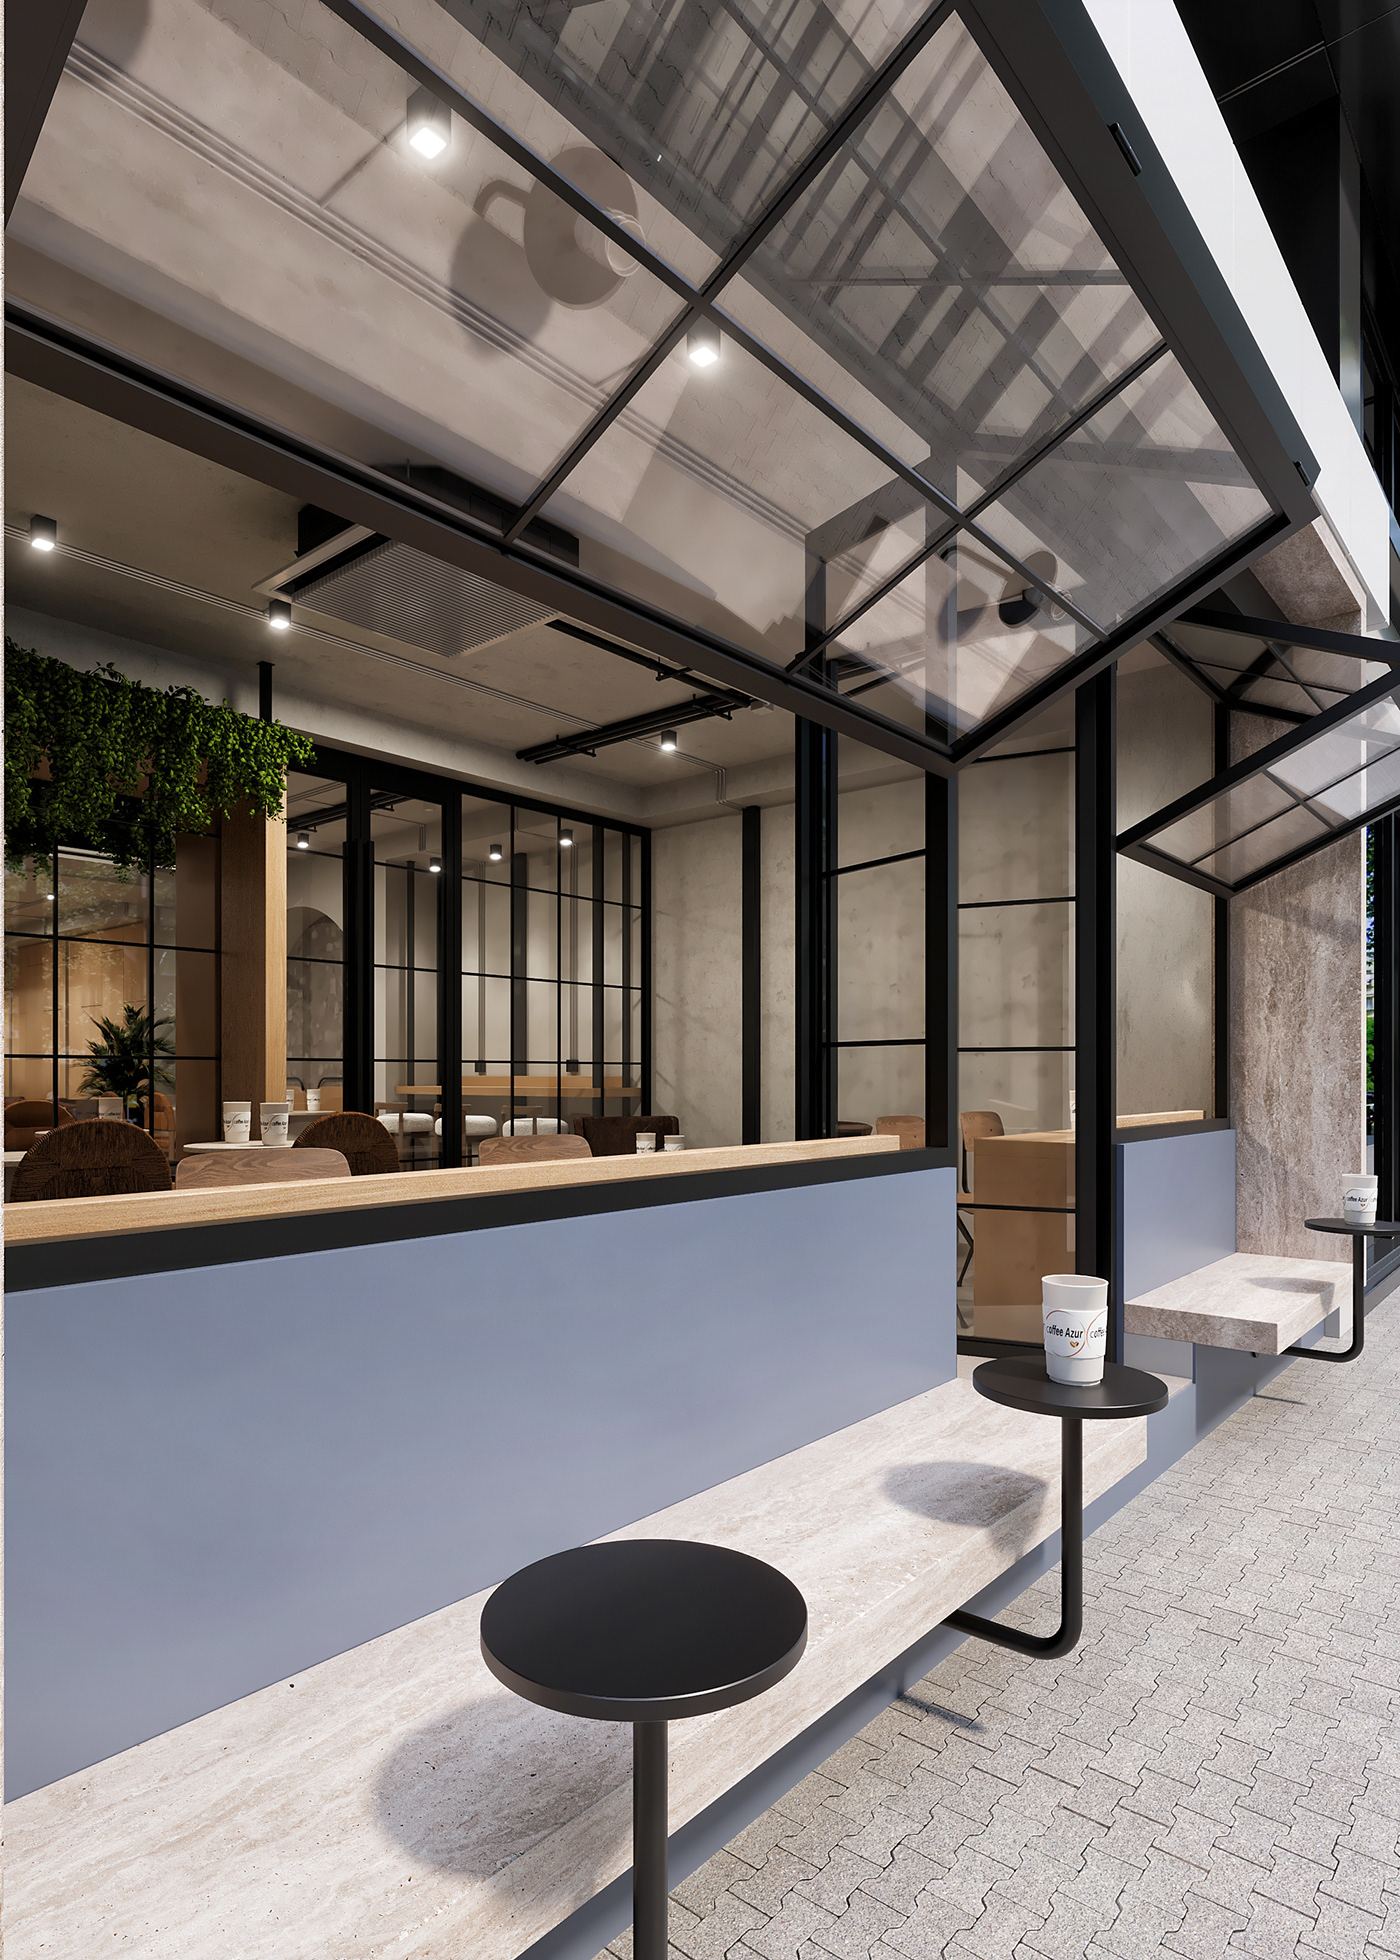 Coffee coffee shop design interior design  architecture modern minimal Interior after effects